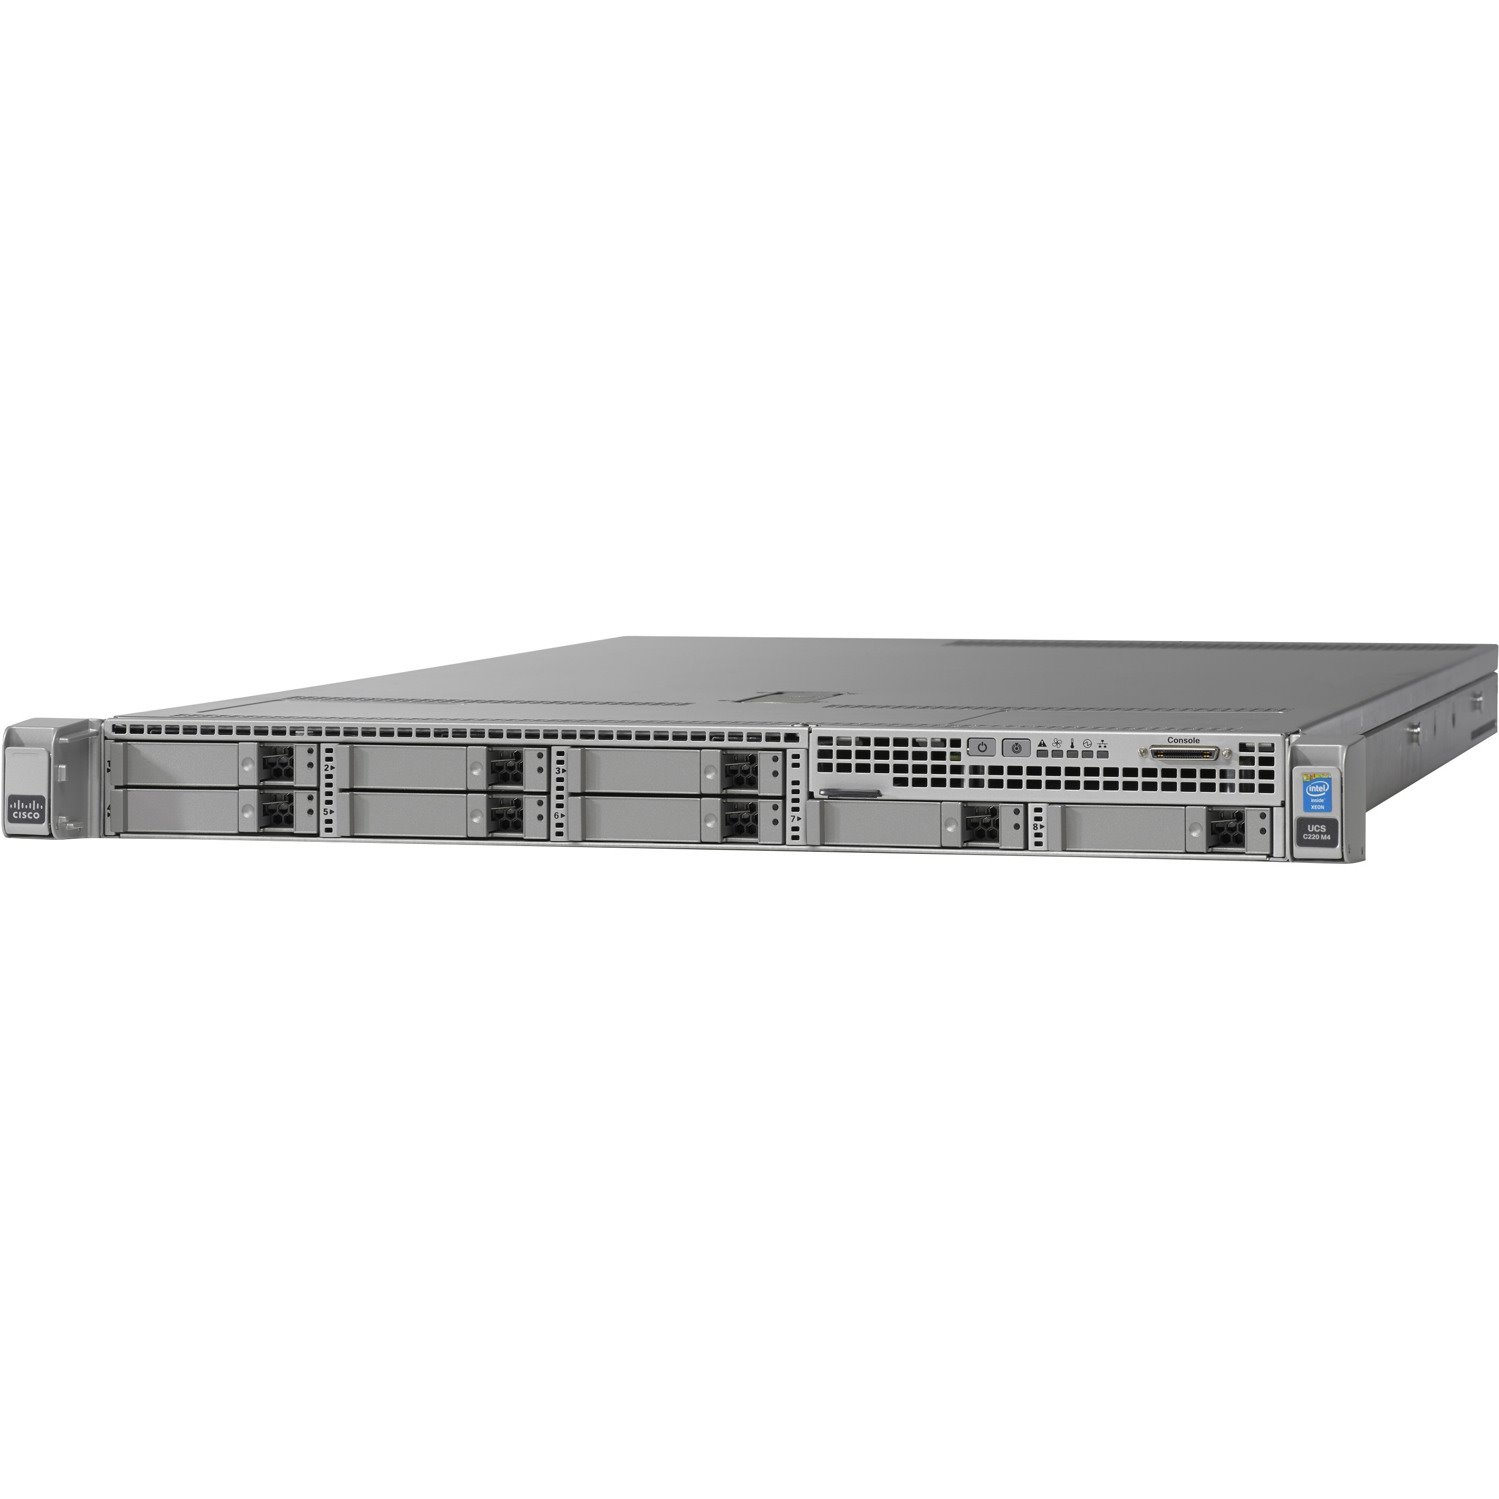 Cisco C220 M4 1U Rack Server - 2 x Intel Xeon E5-2609 v4 1.70 GHz - 64 GB RAM - 12Gb/s SAS, Serial ATA/600 Controller